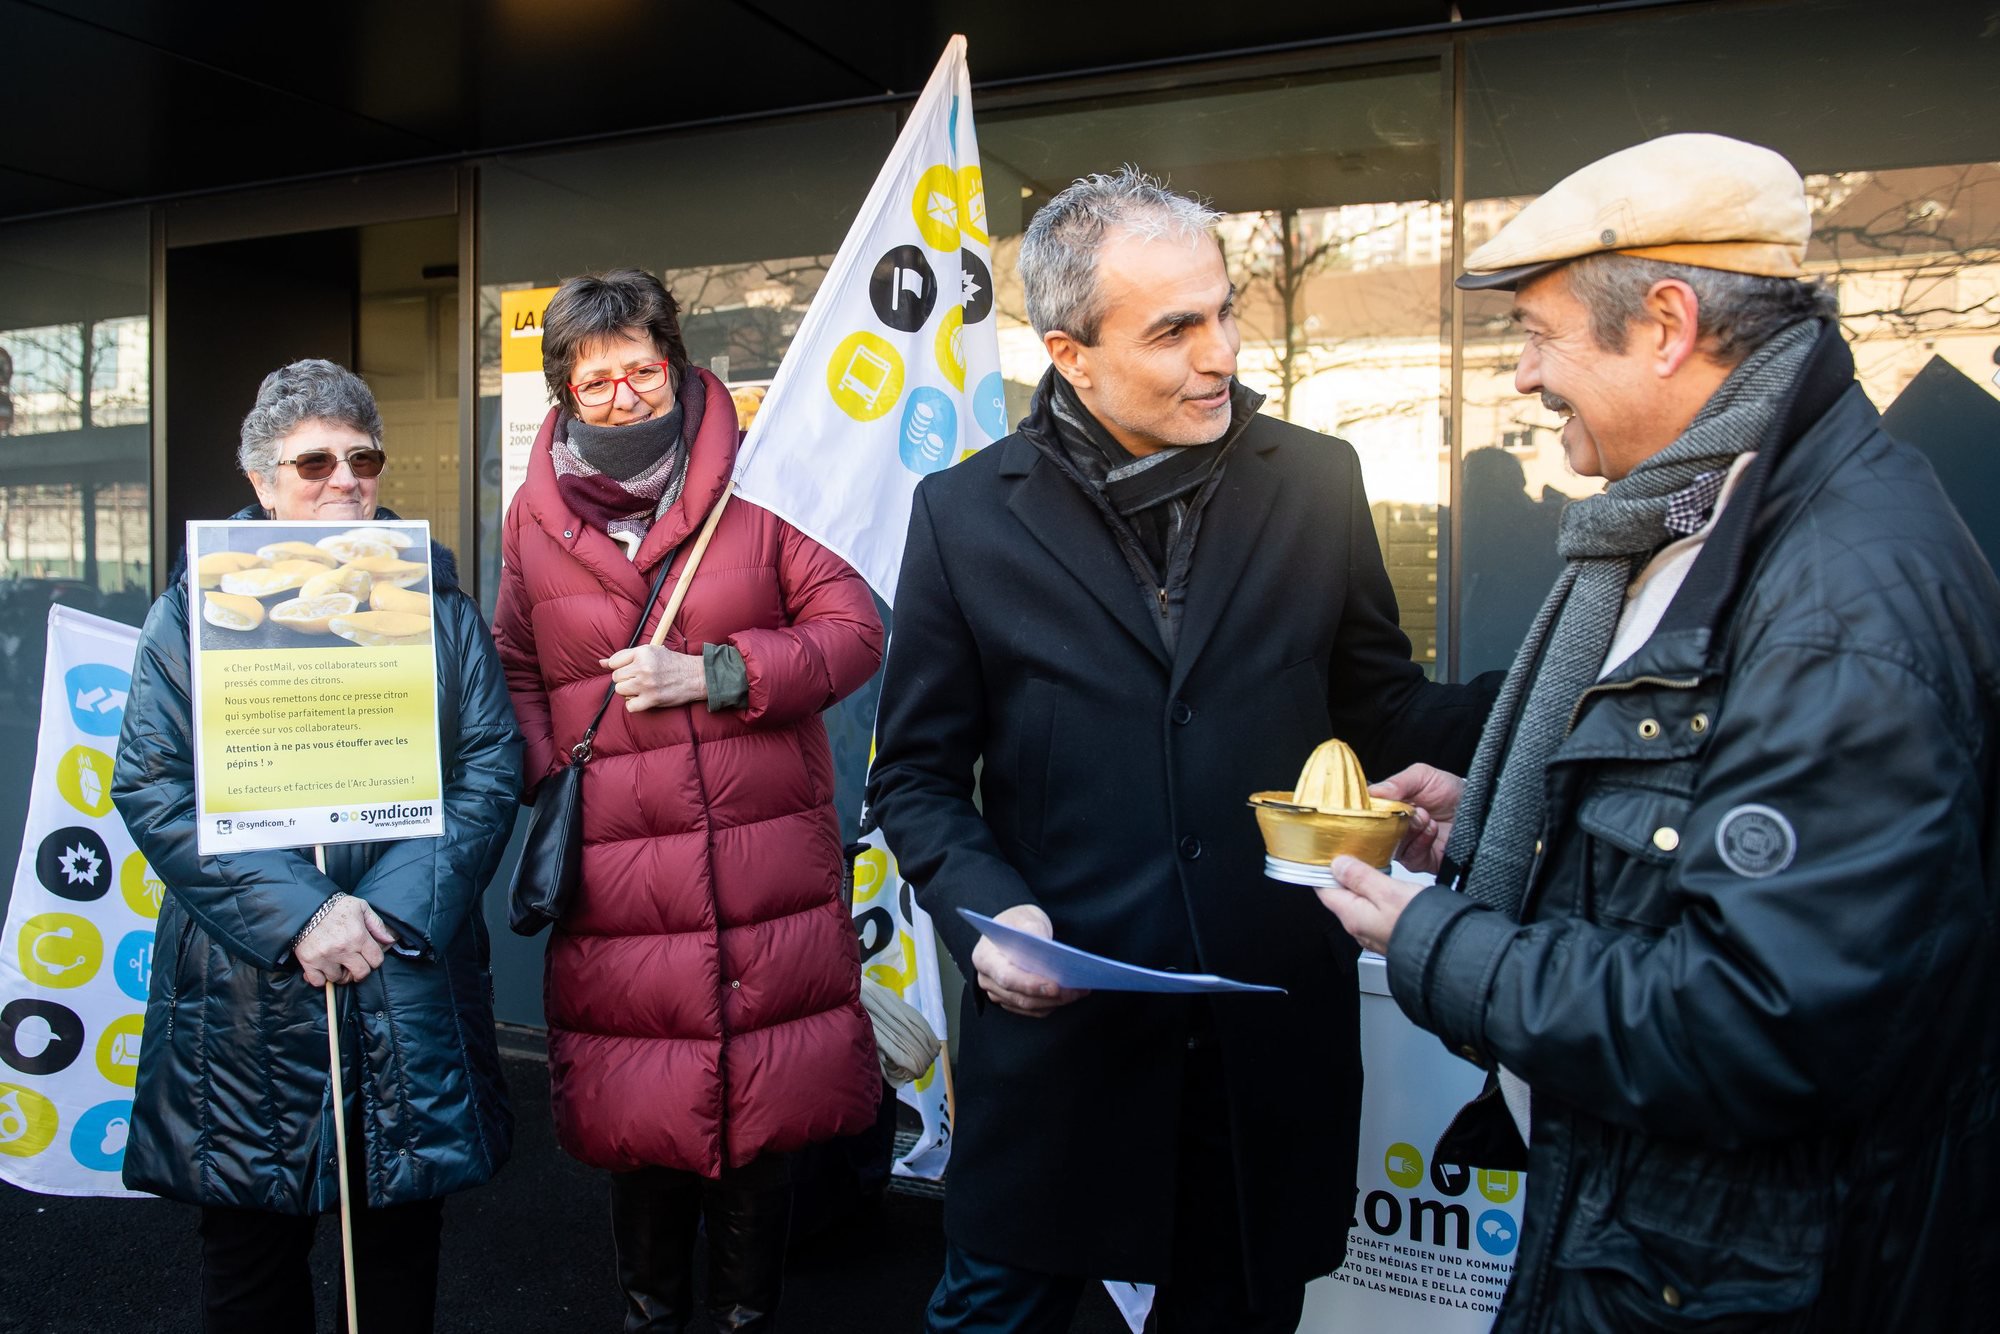 Le presse-citron a été remis ce jeudi matin devant la succursale de La Poste de la gare de Neuchâtel. Jean-François Laneve (à g.), responsable de la zone de distribution, l'a reçu des mains du syndicaliste Jean-François Donzé.